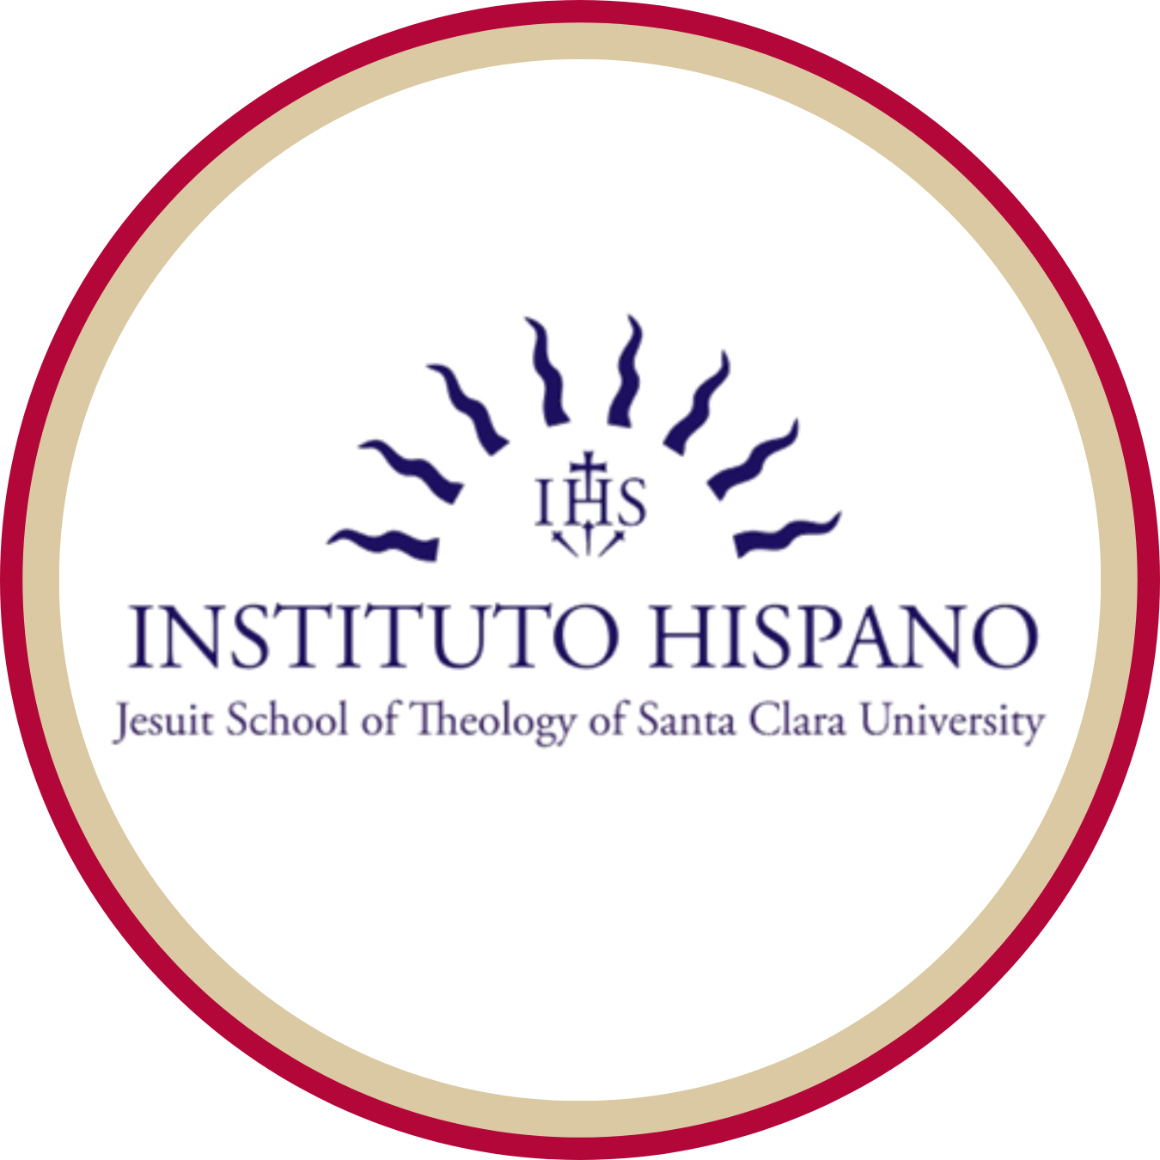 JST Instituto Hispano